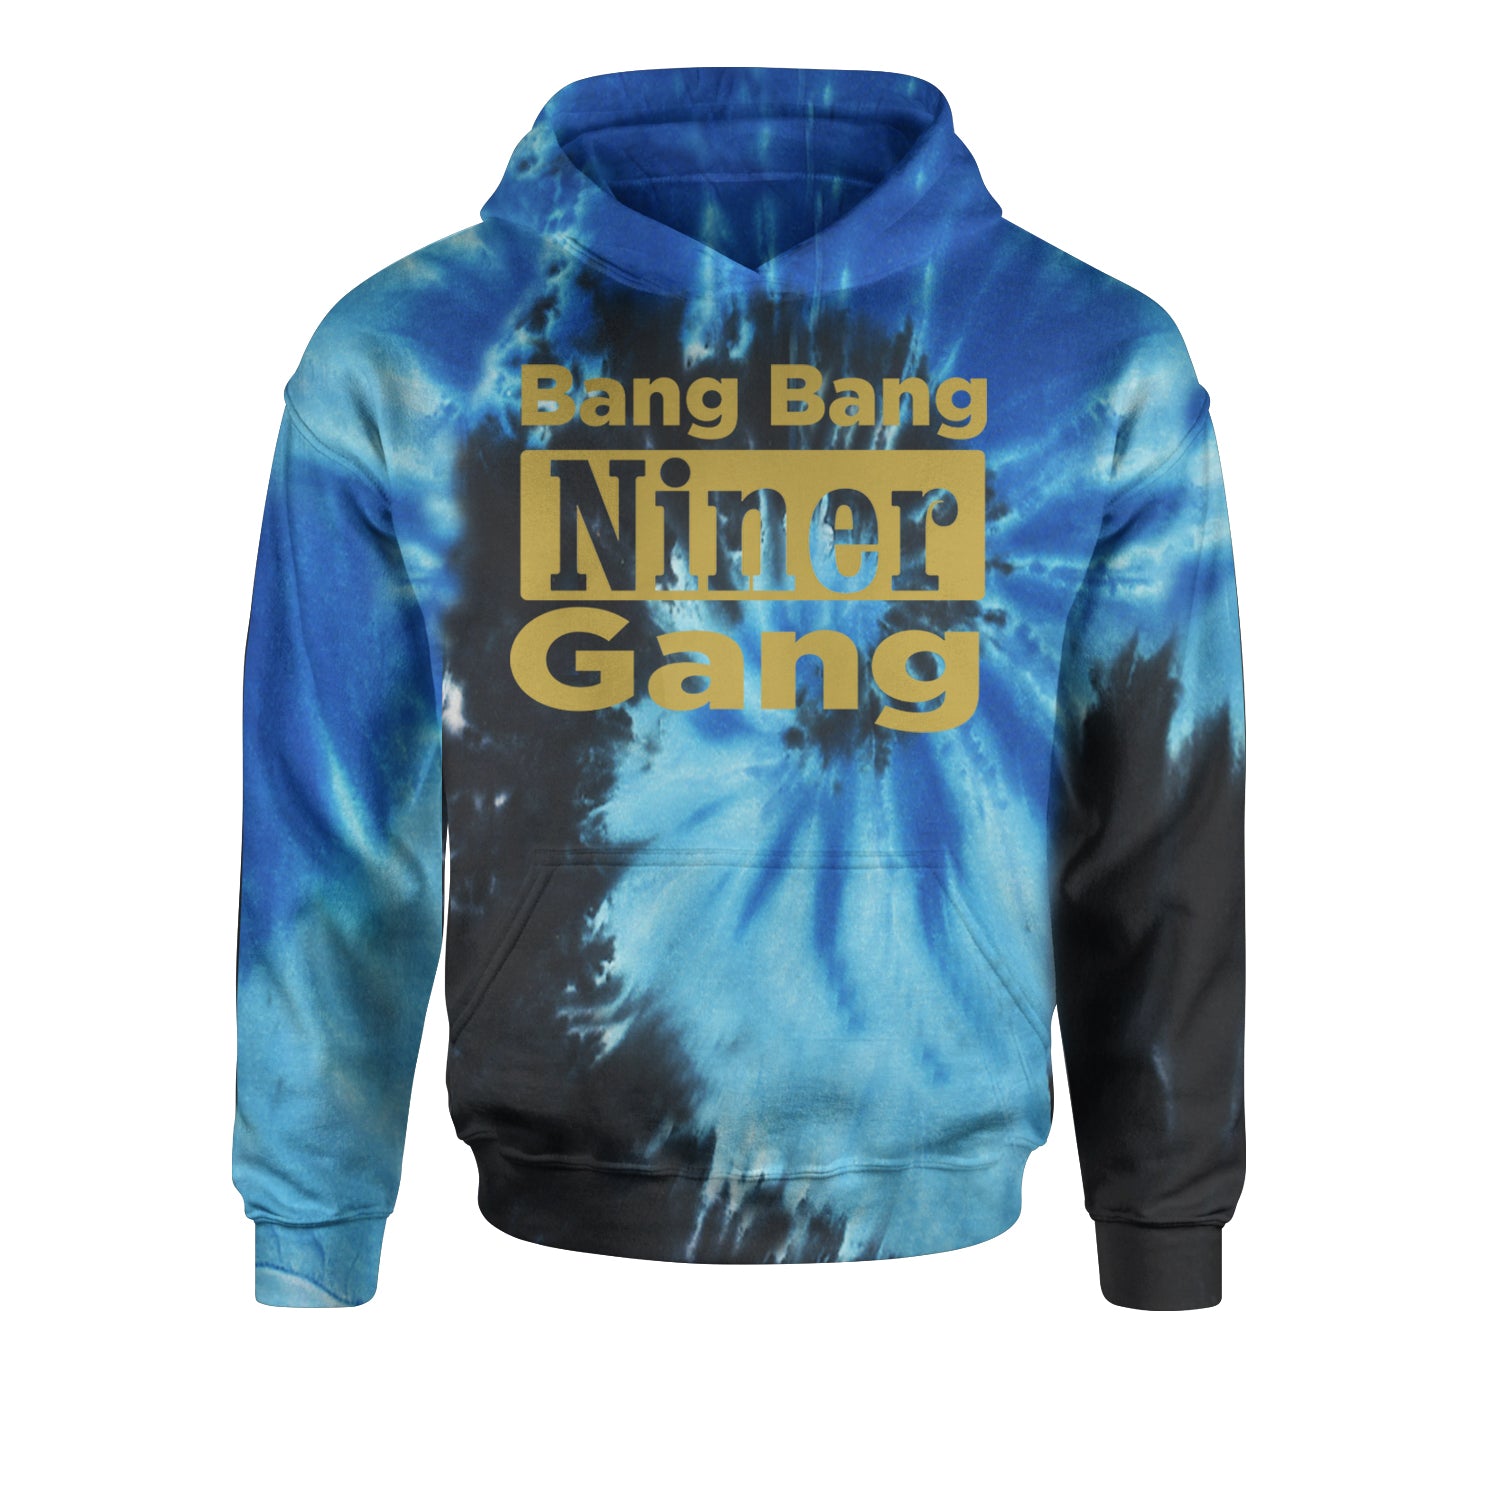 Bang Bang Niner Gang San Francisco Youth-Sized Hoodie